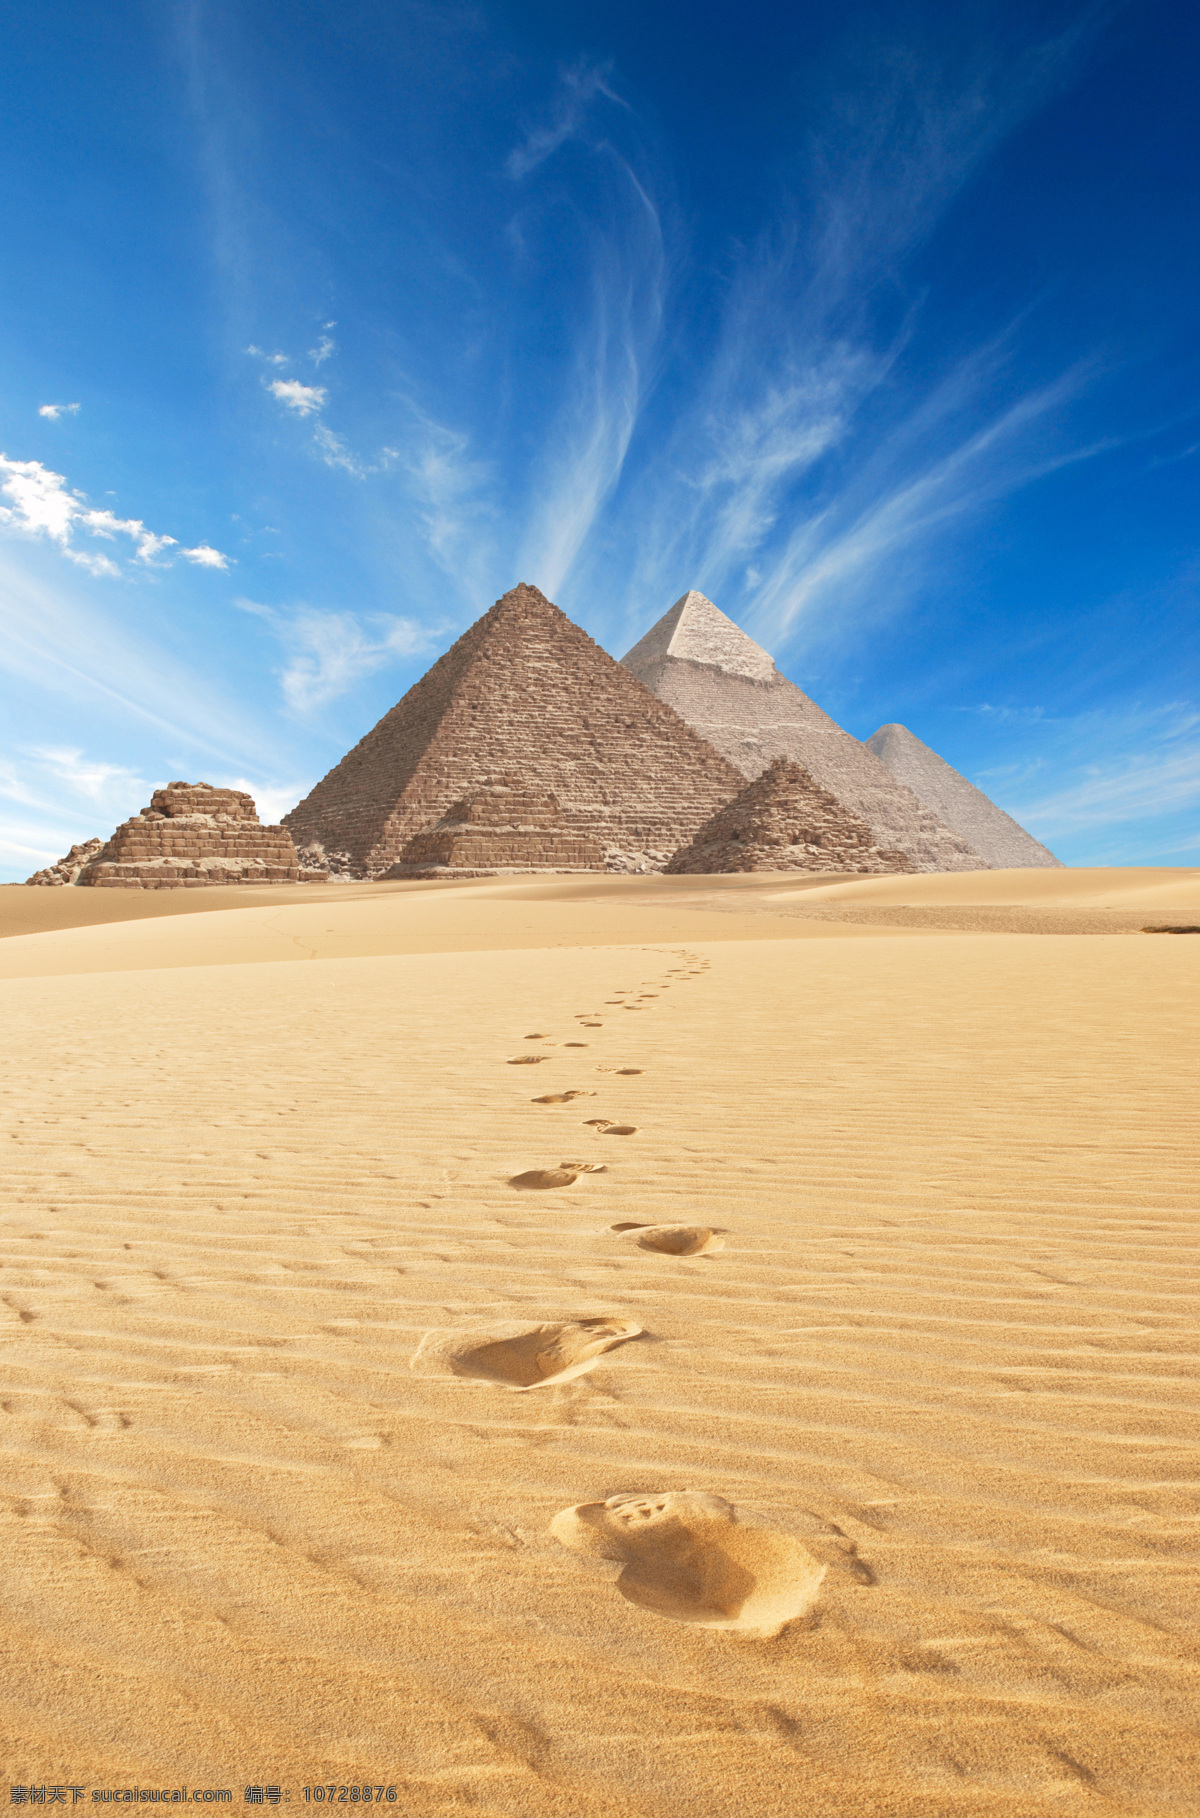 沙漠 上 金字塔 蓝天白云 沙漠风景 埃及旅游景点 金字塔风景 美丽景色 古迹 旅游胜地 自然风景 自然景观 黄色